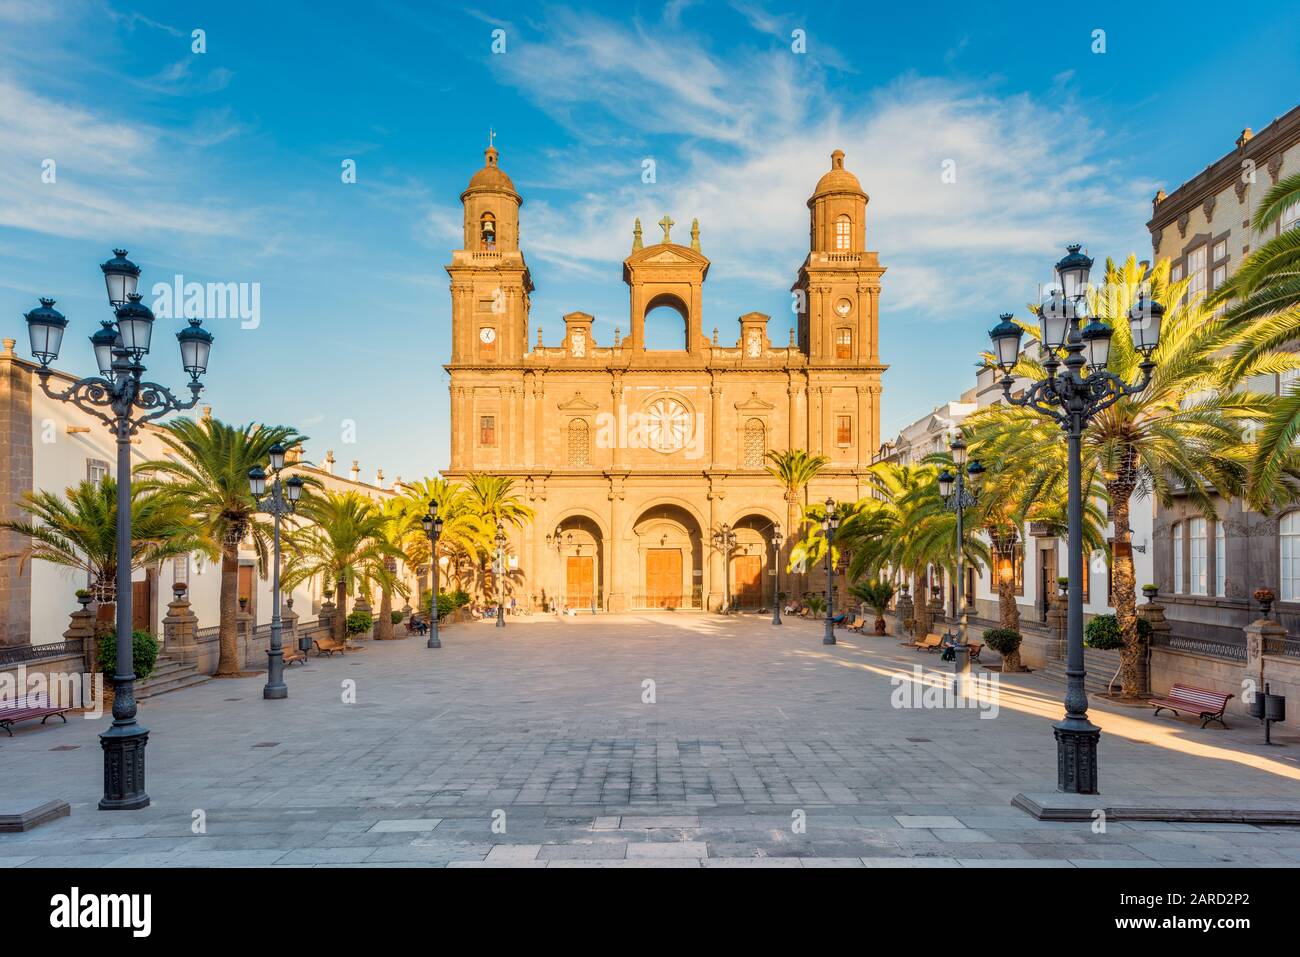 Catedral de Santa Ana en las Palmas de Gran Canaria, capital de Gran Canaria, Islas Canarias, España. La construcción comenzó en 1500 y duró 4 CE Foto de stock